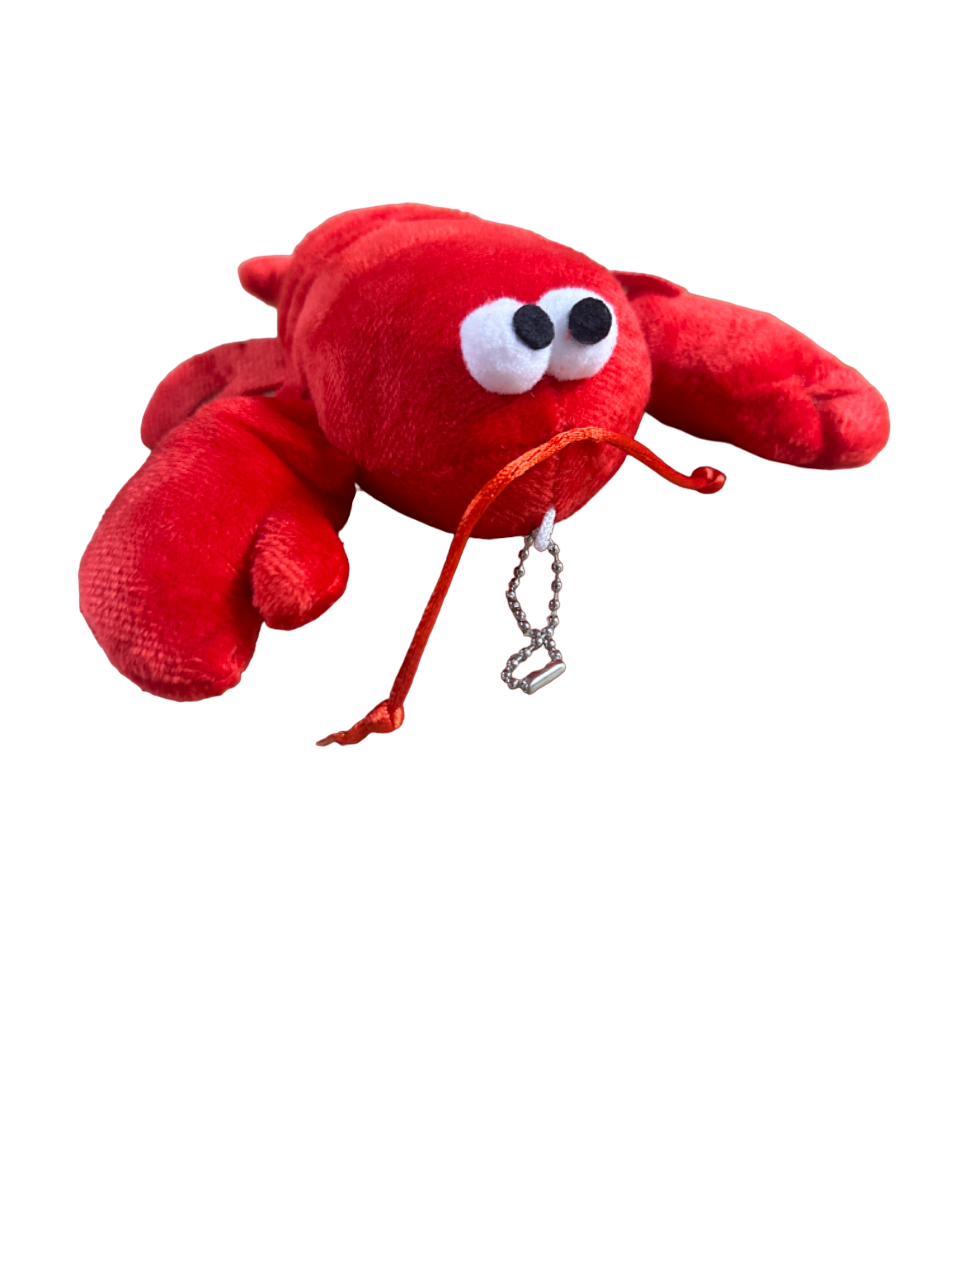 6" Red Plush Crawfish